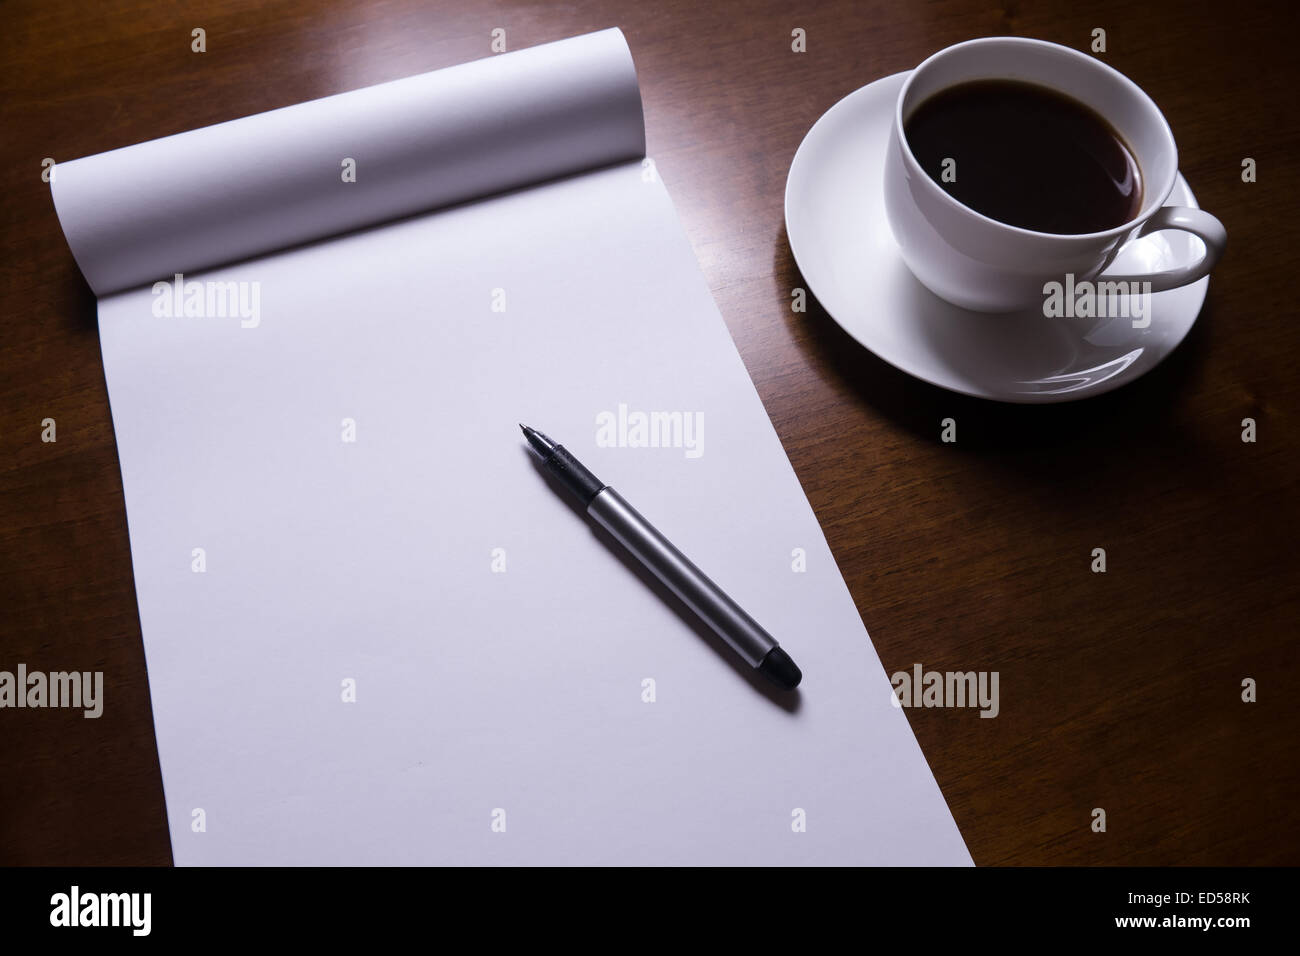 Hoja de papel, lápiz y la taza de café en la mesa. Foto de stock